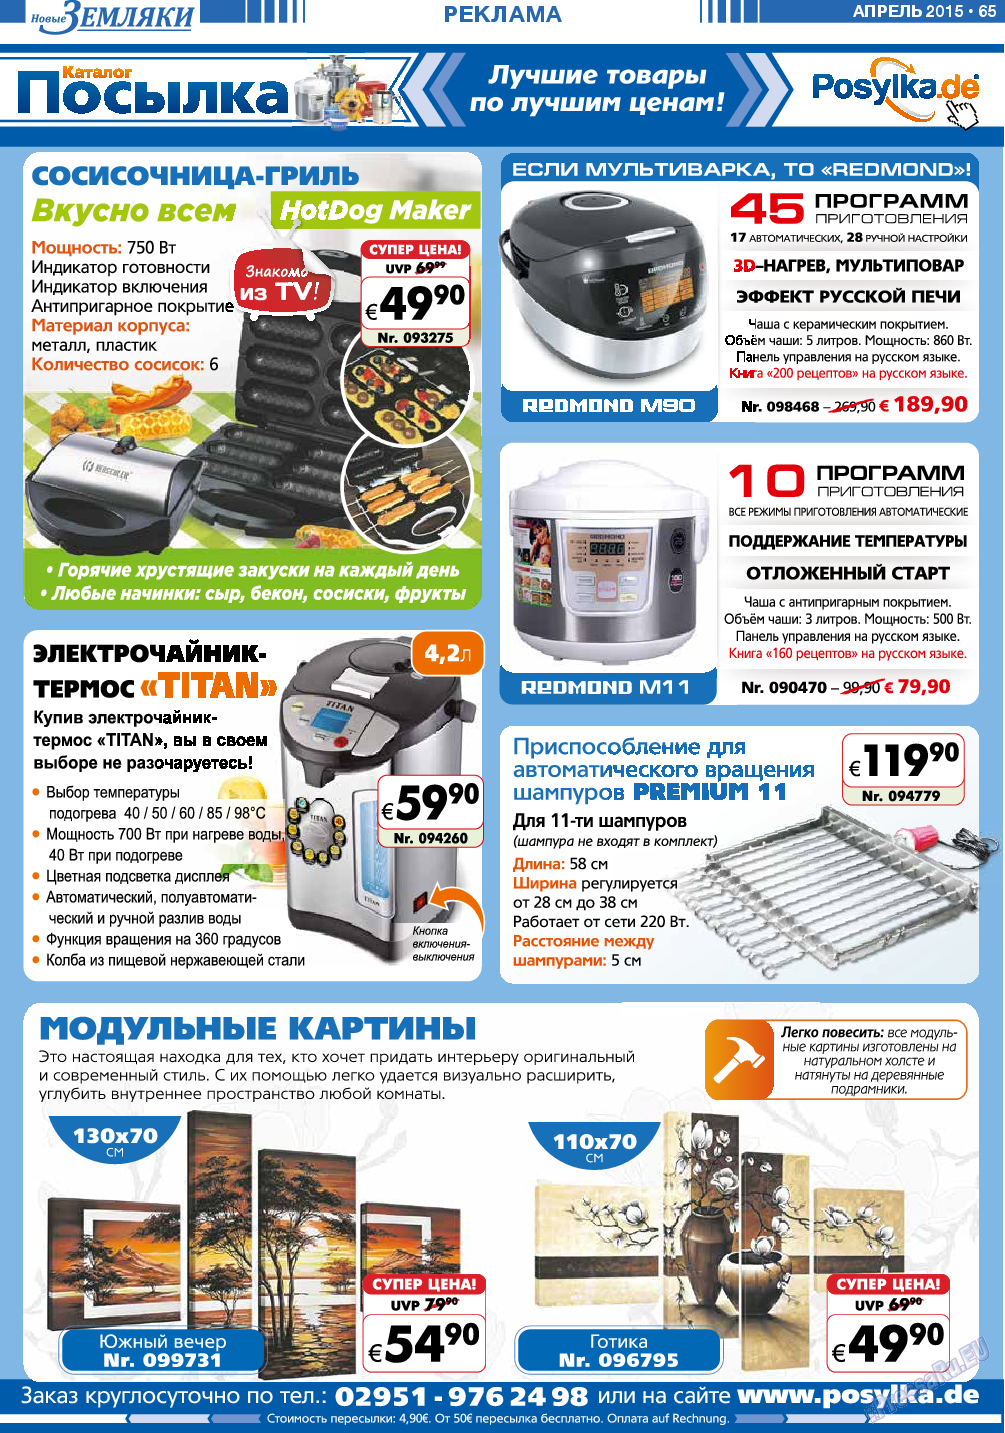 Новые Земляки (газета). 2015 год, номер 4, стр. 65